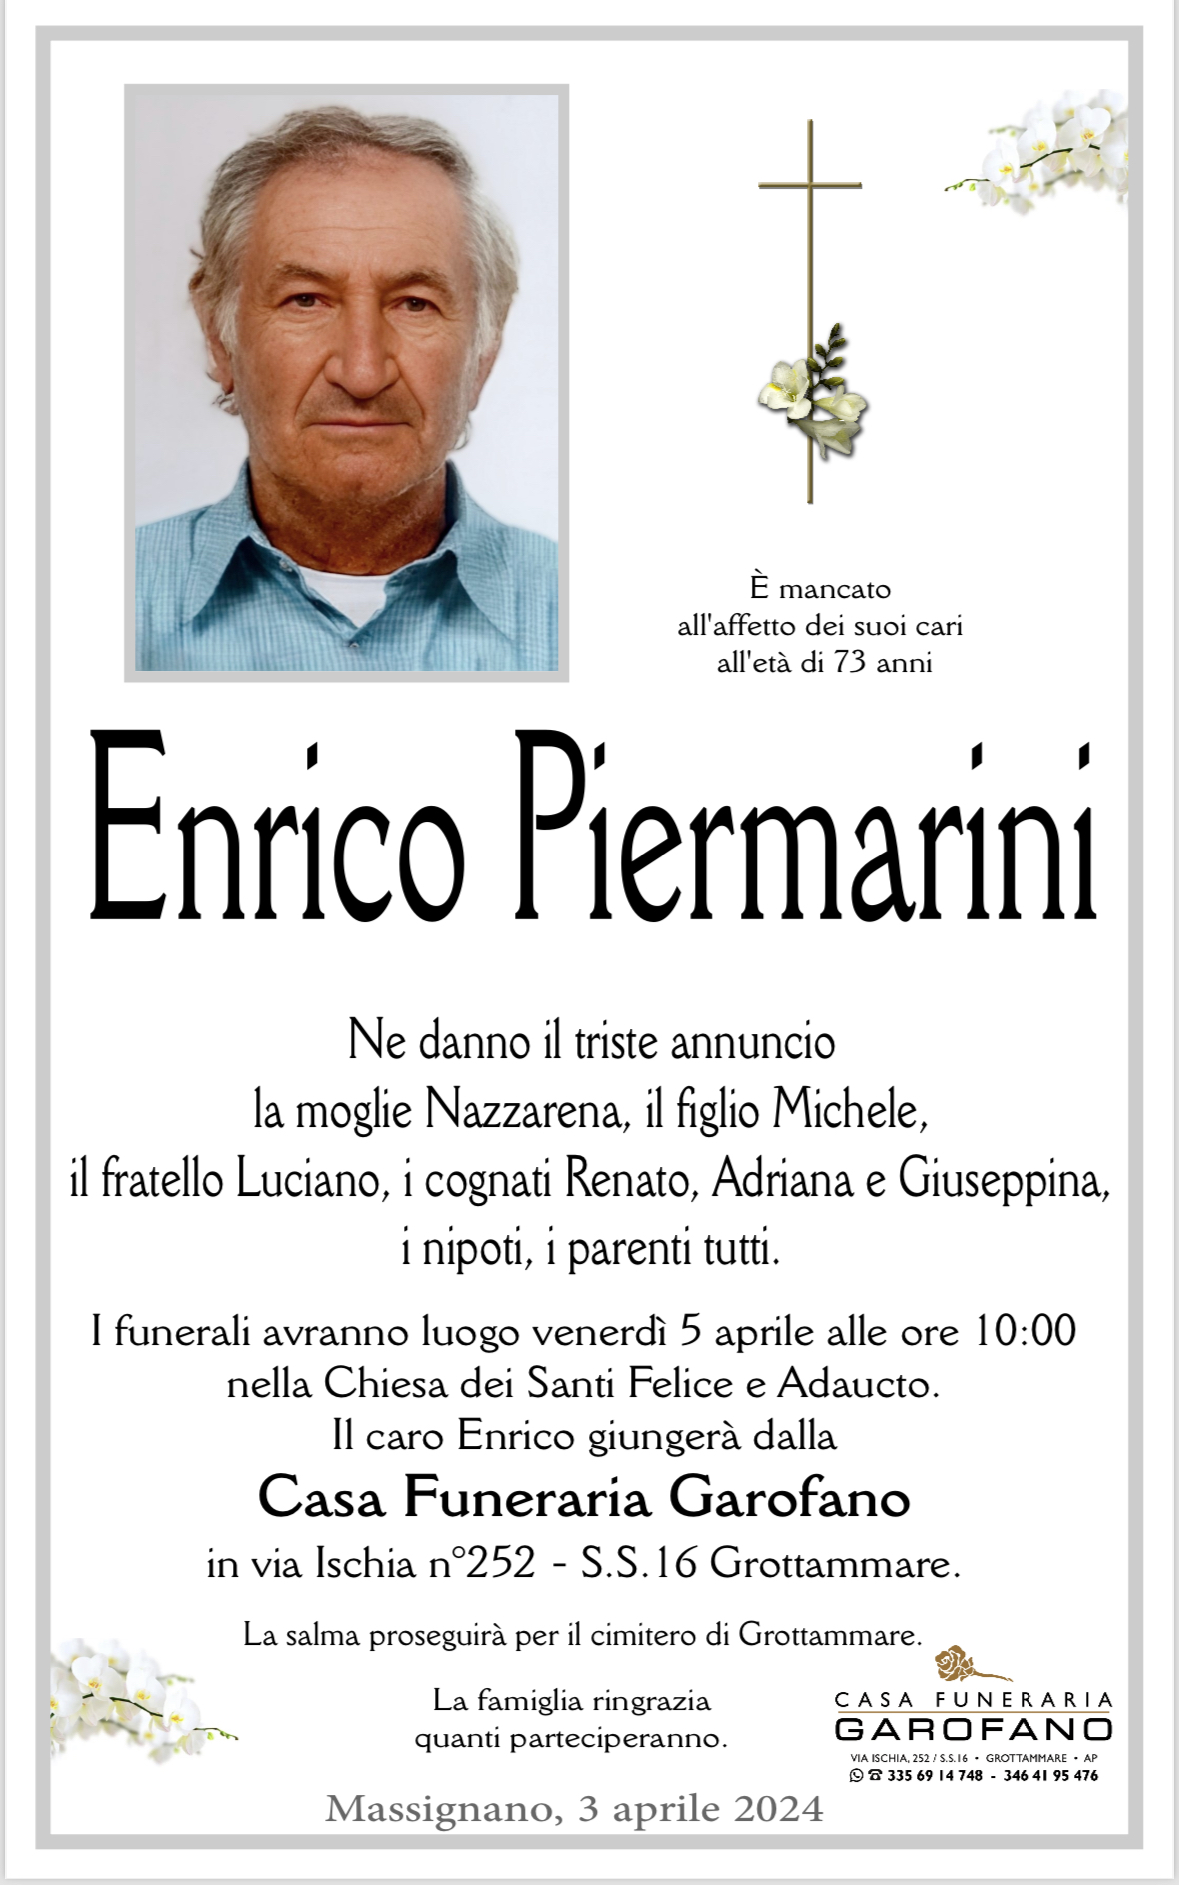 Enrico Piermarini